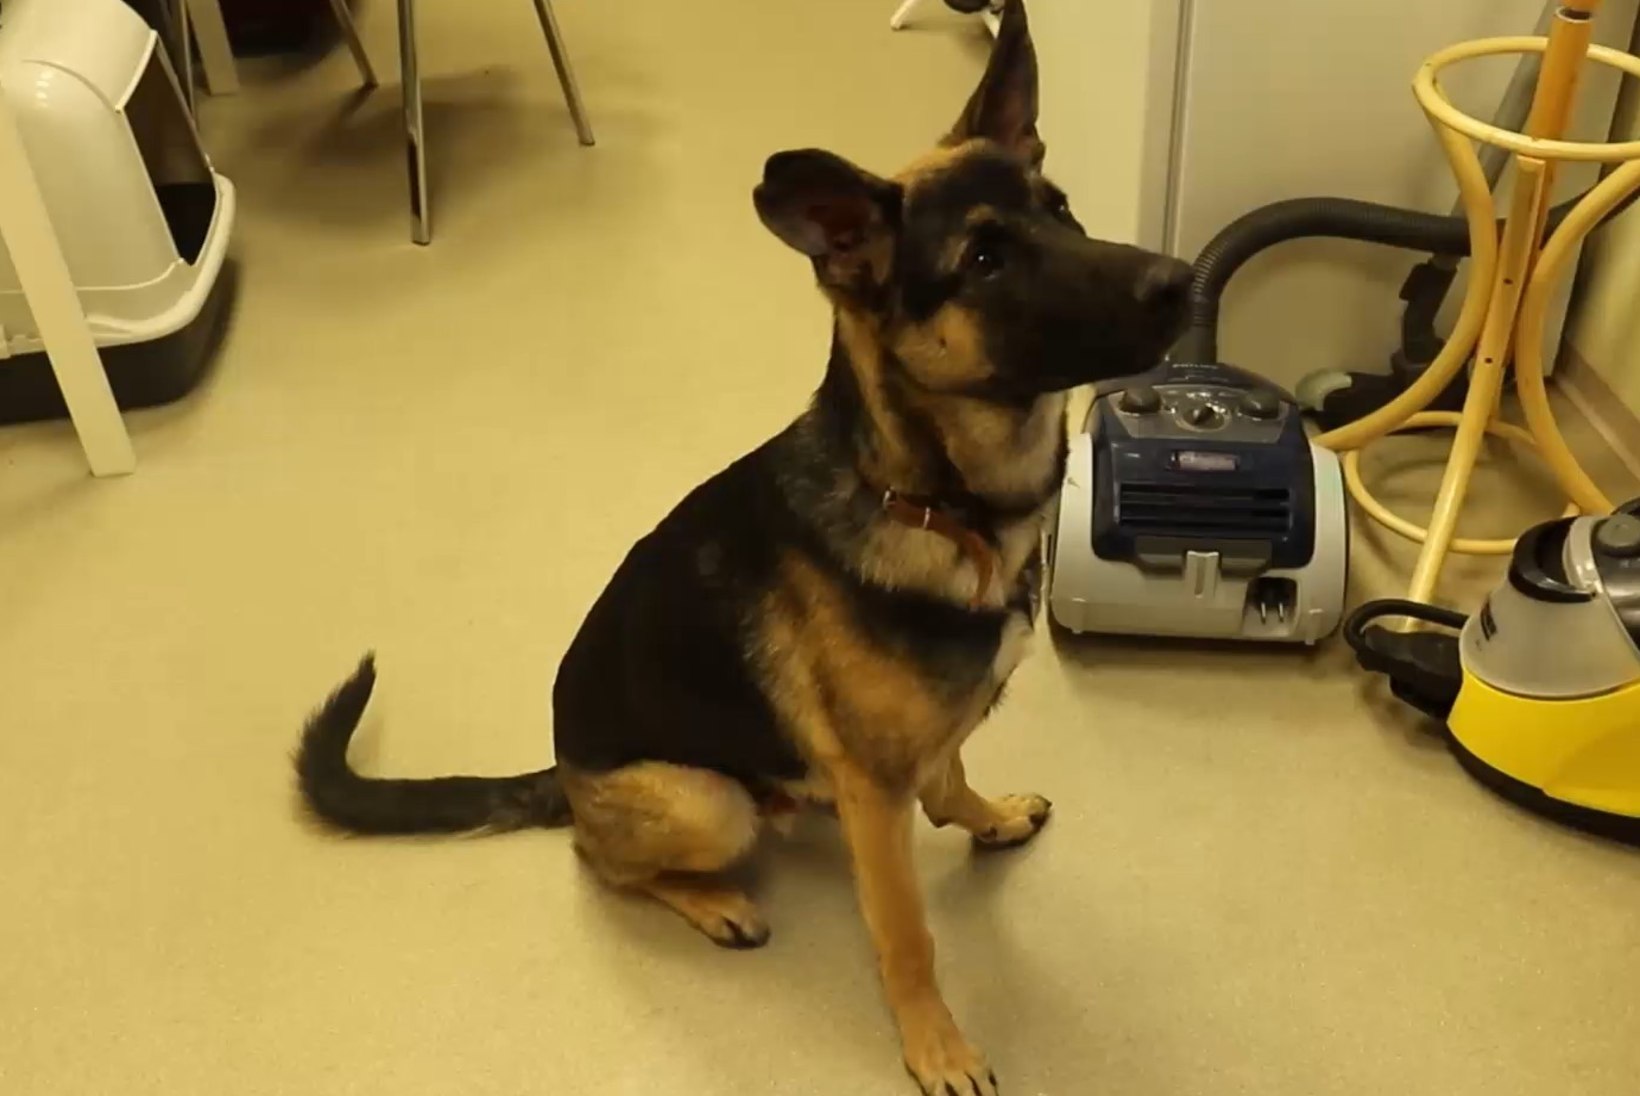 ÕHTULEHE VIDEO | KODUOTSIJA: rõõmsameelne ja sõbralik koer Austin otsib aktiivse eluviisiga omanikku